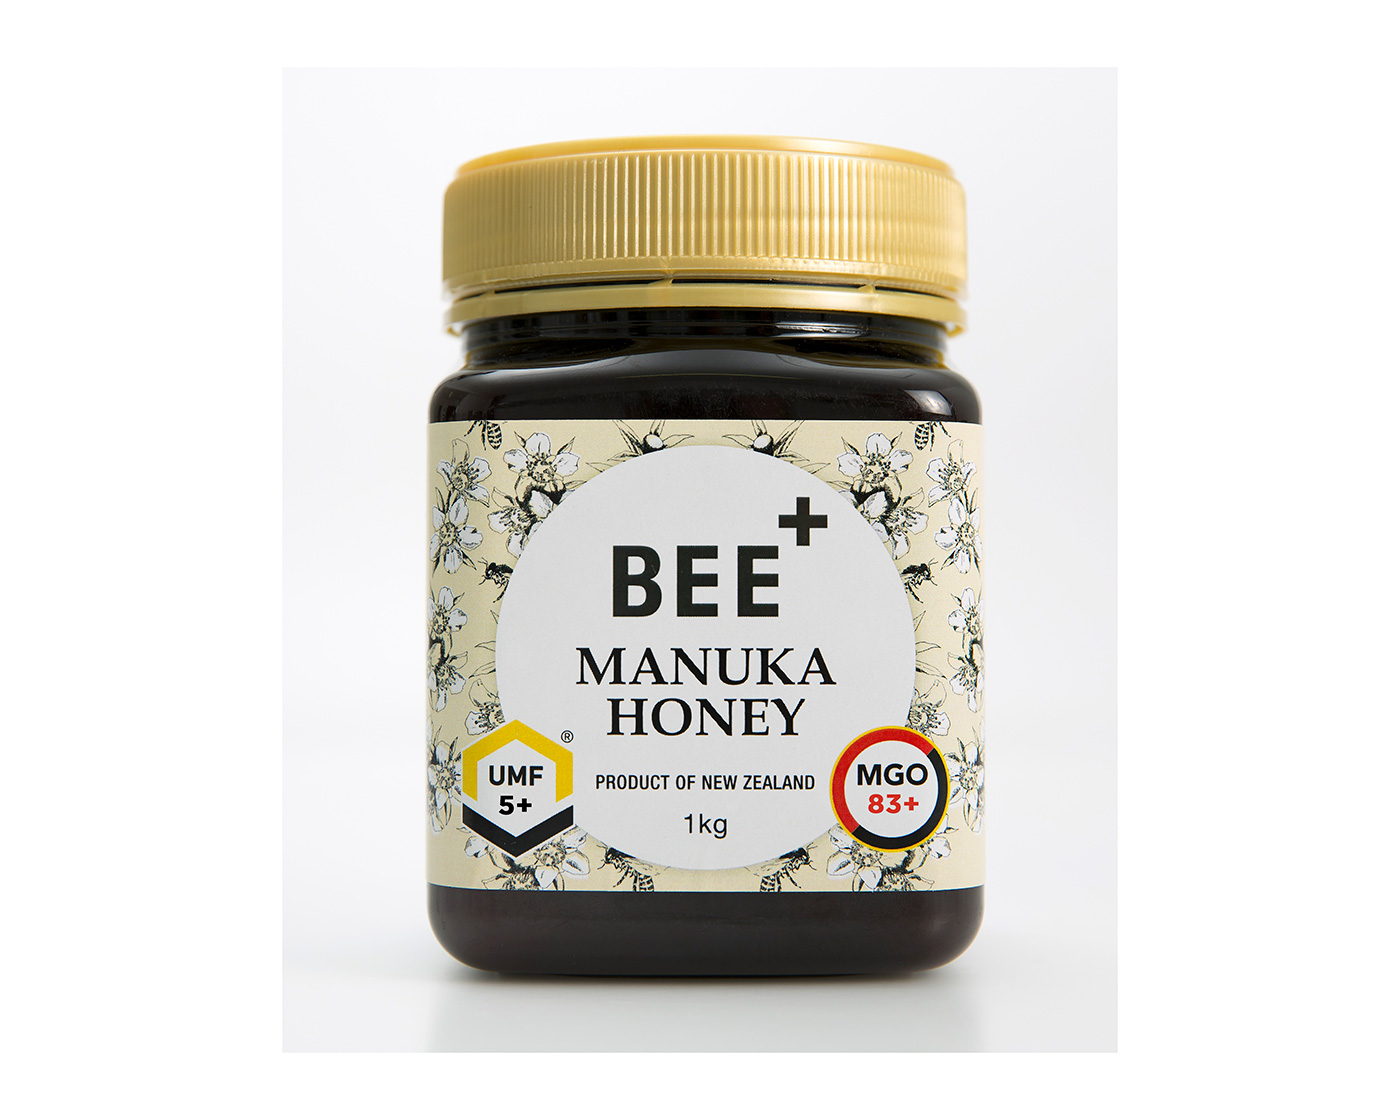 Bee+ manuka honey, New Zealand